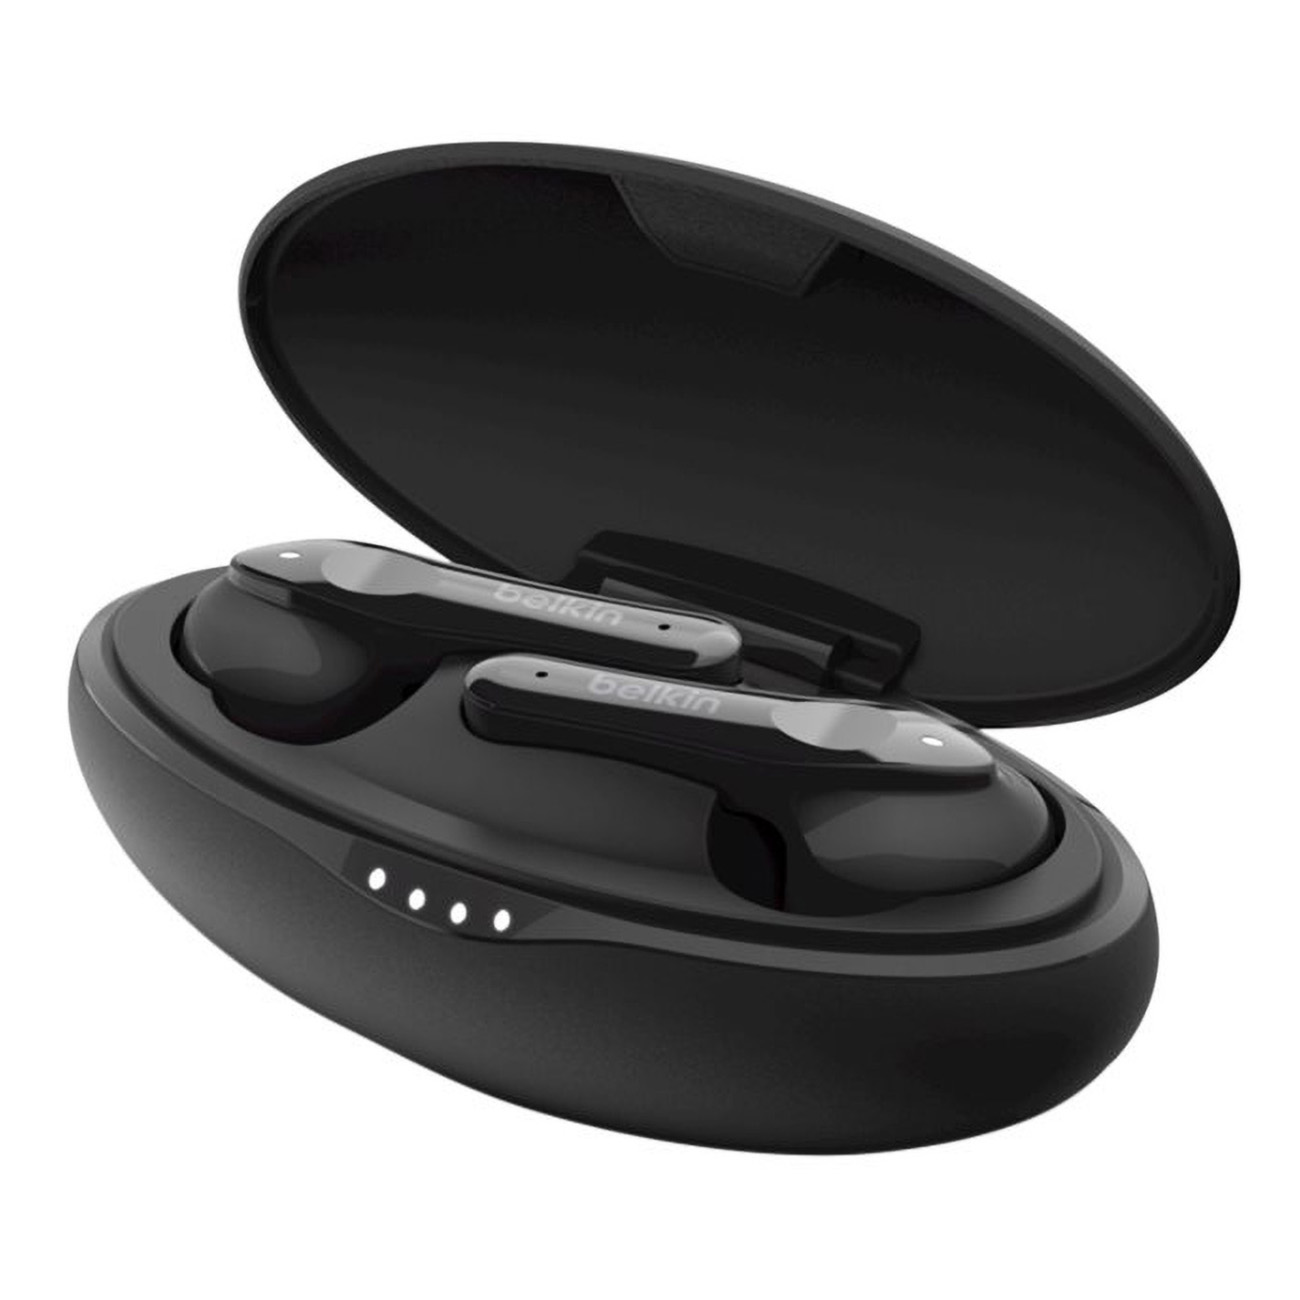 BELKIN Soundform Move Plus, In-ear schwarz Kopfhörer Bluetooth